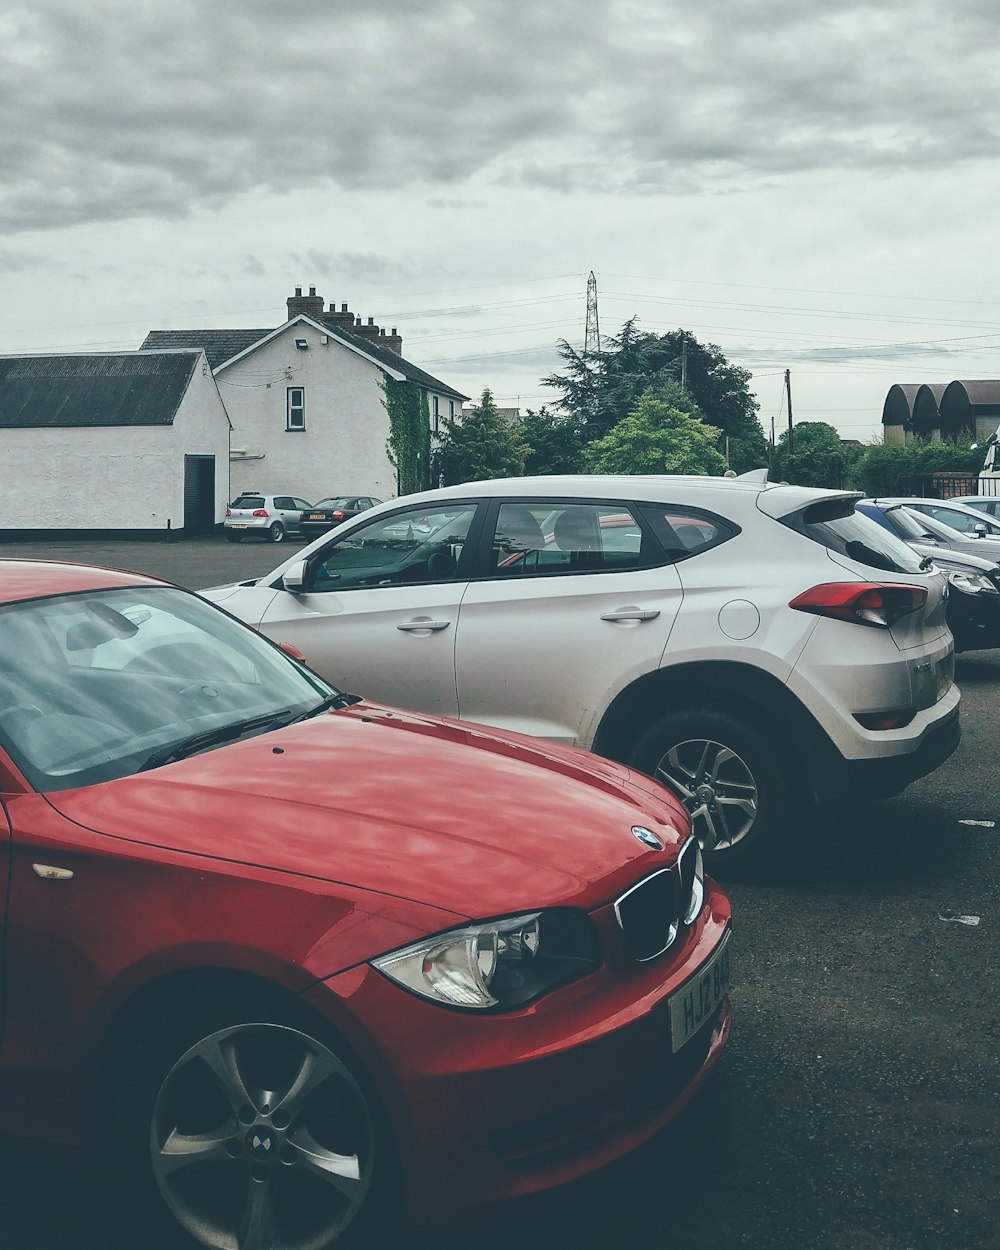 Carros vermelhos e brancos estacionados.